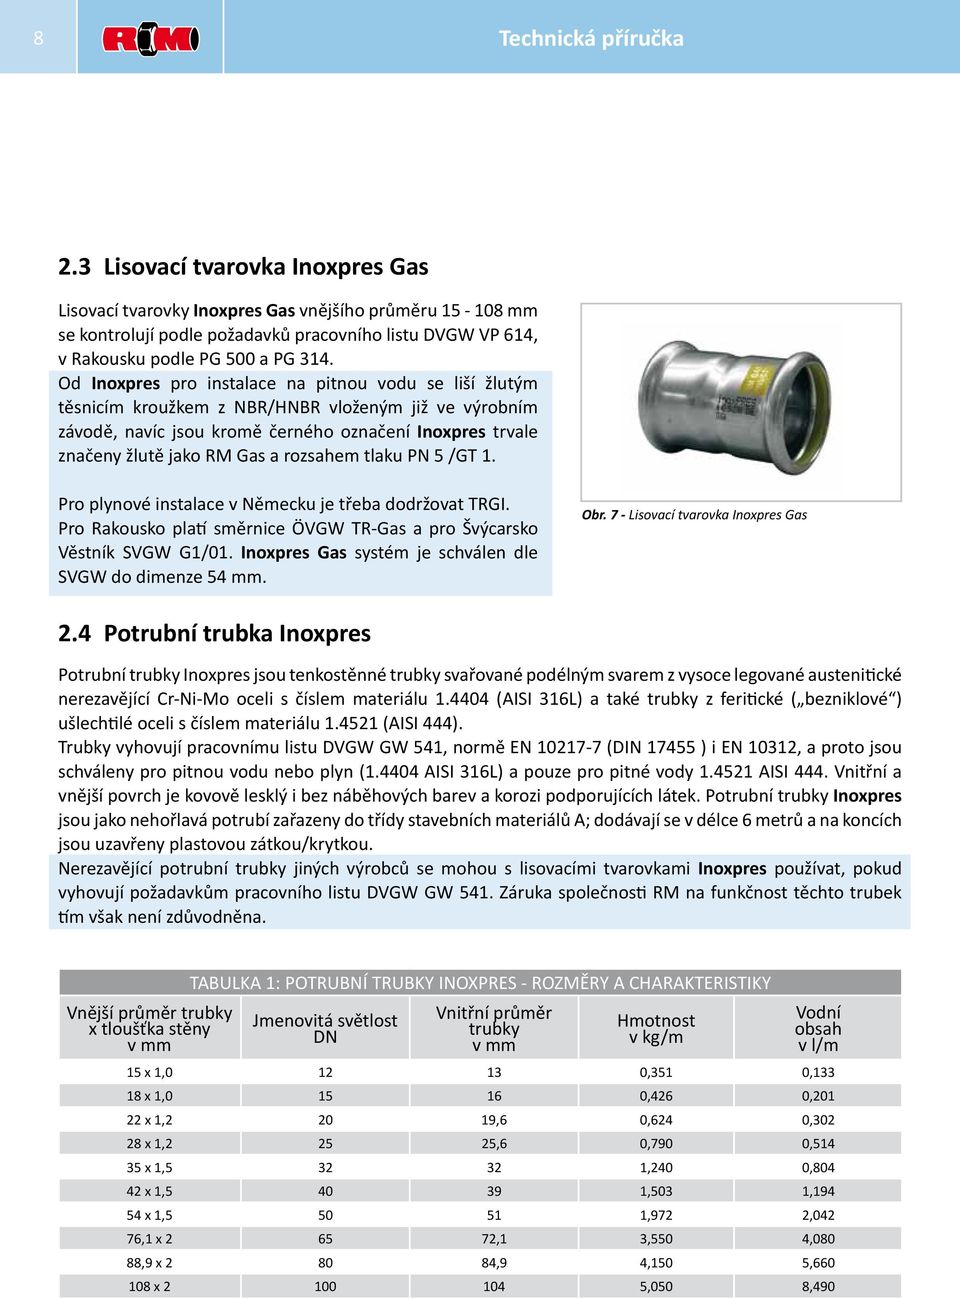 Od Inoxpres pro instalace na pitnou vodu se liší žlutým těsnicím kroužkem z NBR/HNBR vloženým již ve výrobním závodě, navíc jsou kromě černého označení Inoxpres trvale značeny žlutě jako RM Gas a